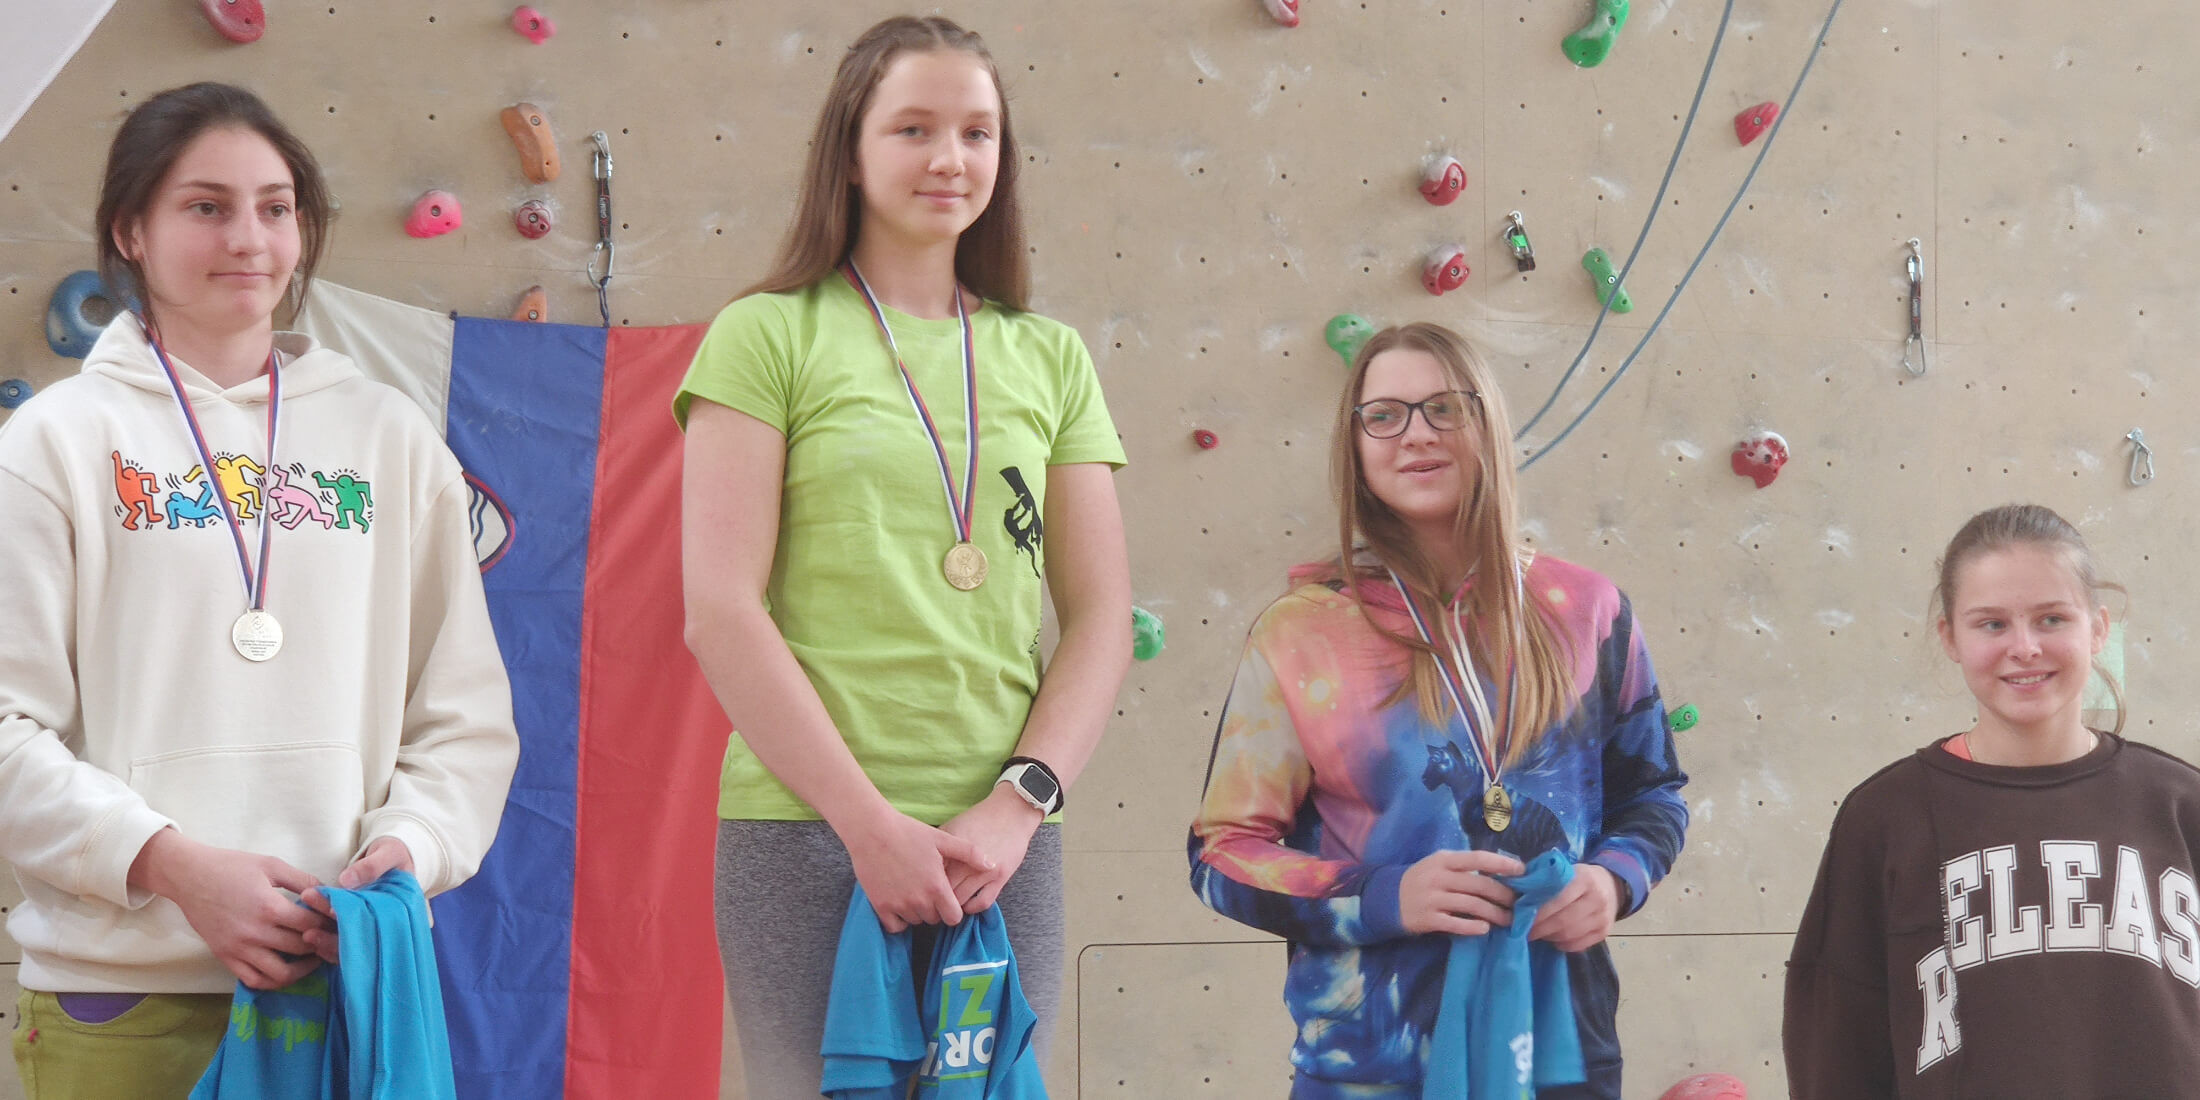 Lara Reš iz 1. a je državna prvakinja v športnem plezanju, njena sošolka Tinkara Dolžan podprvakinja, Lukas Kalan iz 1. b podprvak